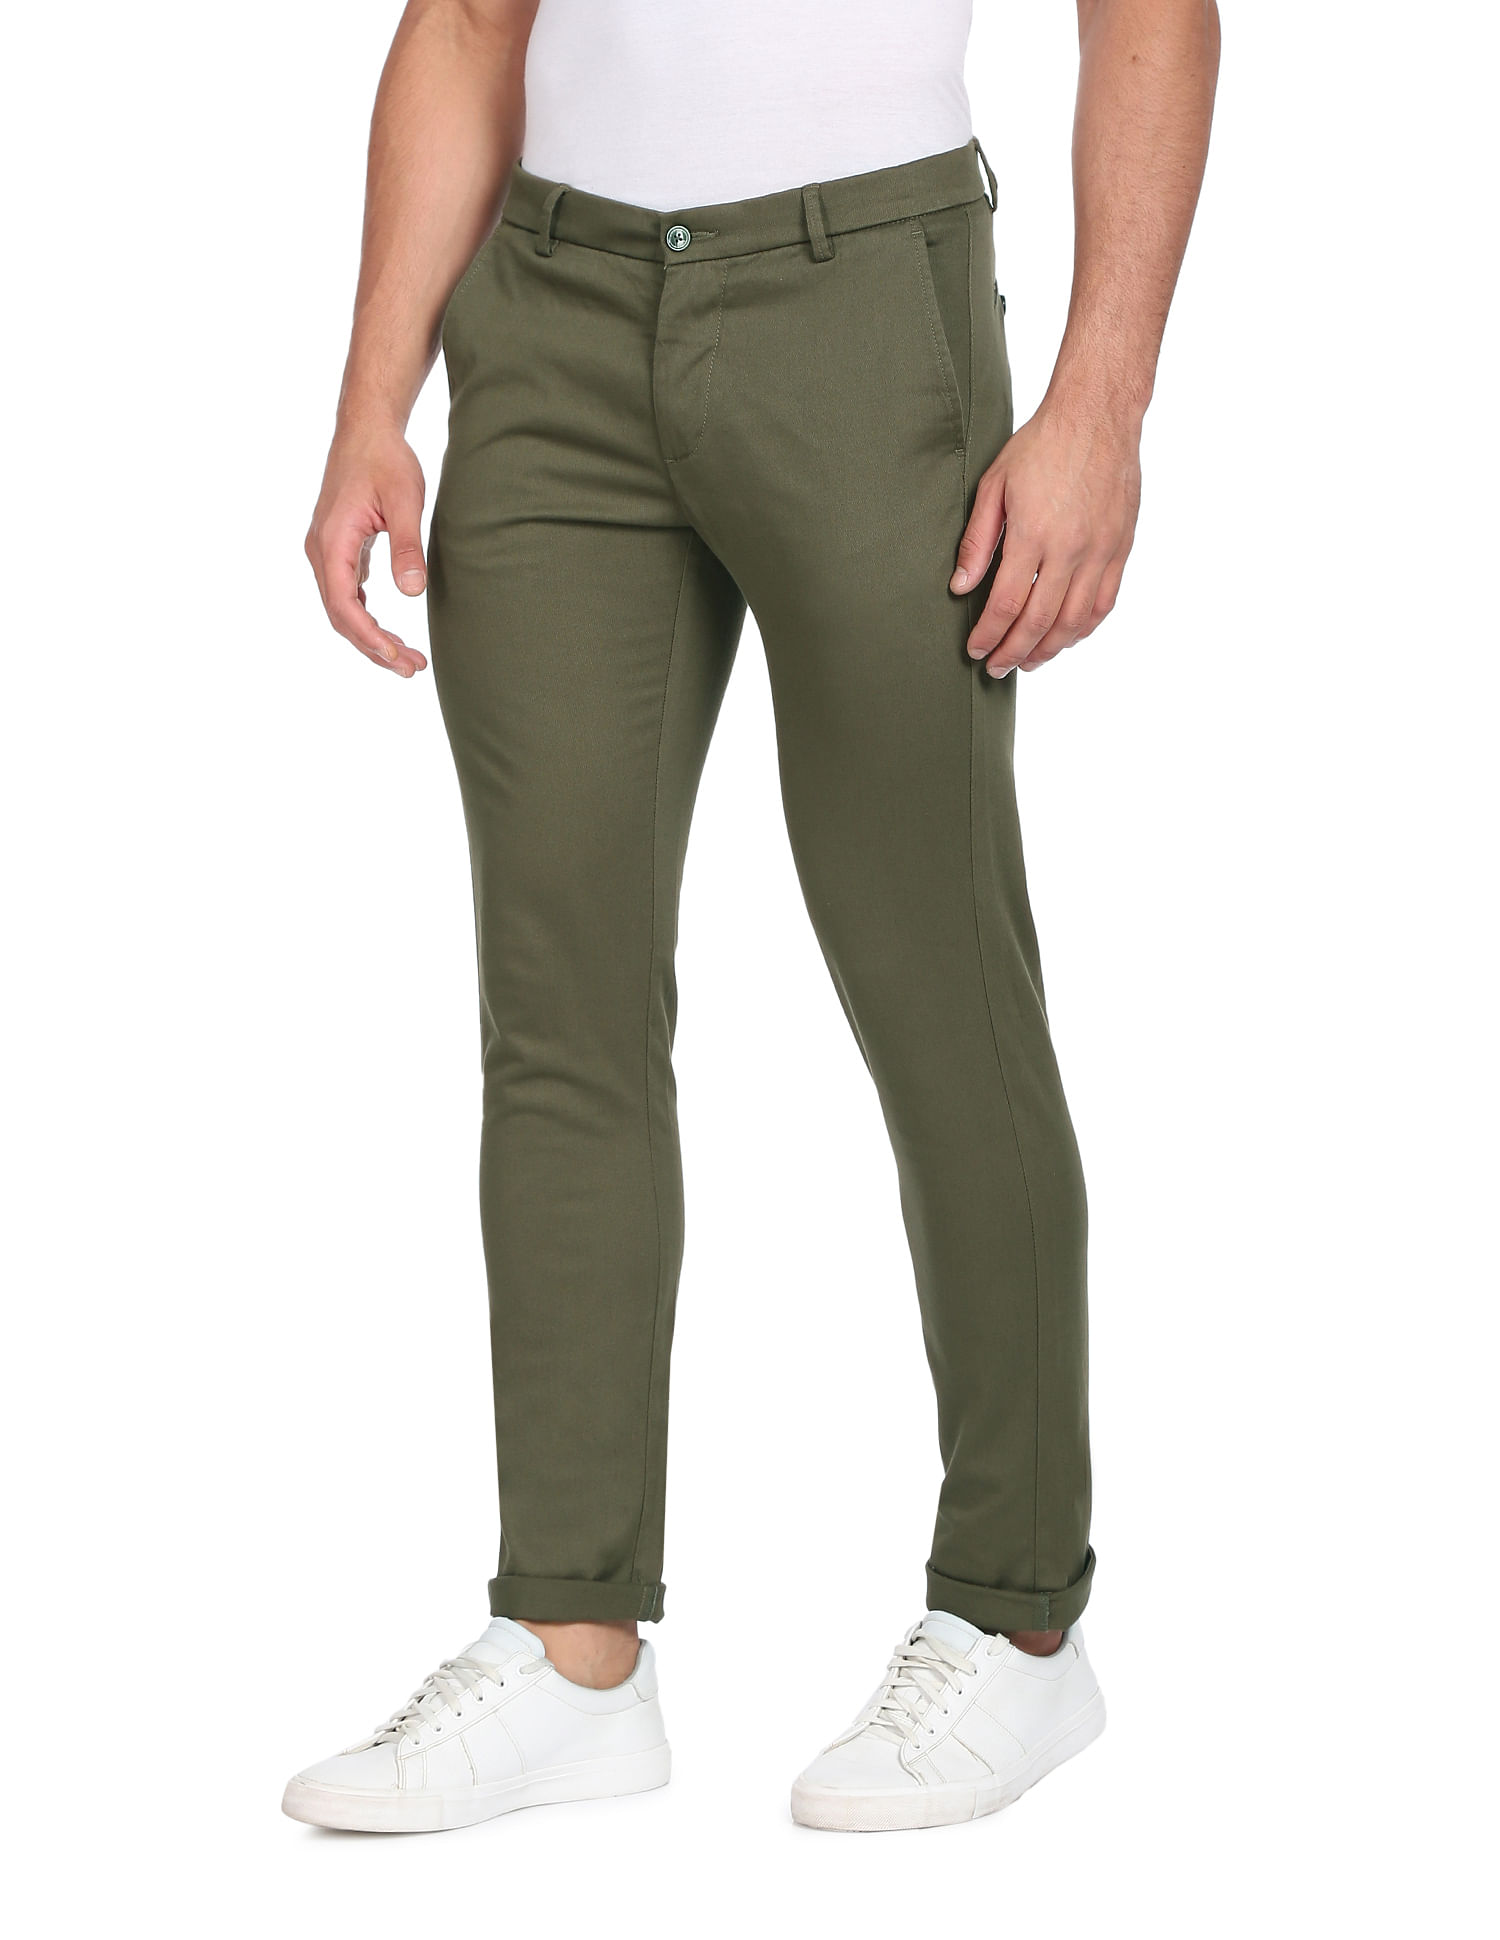 Spykar Olive Green Cotton Slim Fit Regular Length Trousers For Men -  vot02bbcg034olivegreen